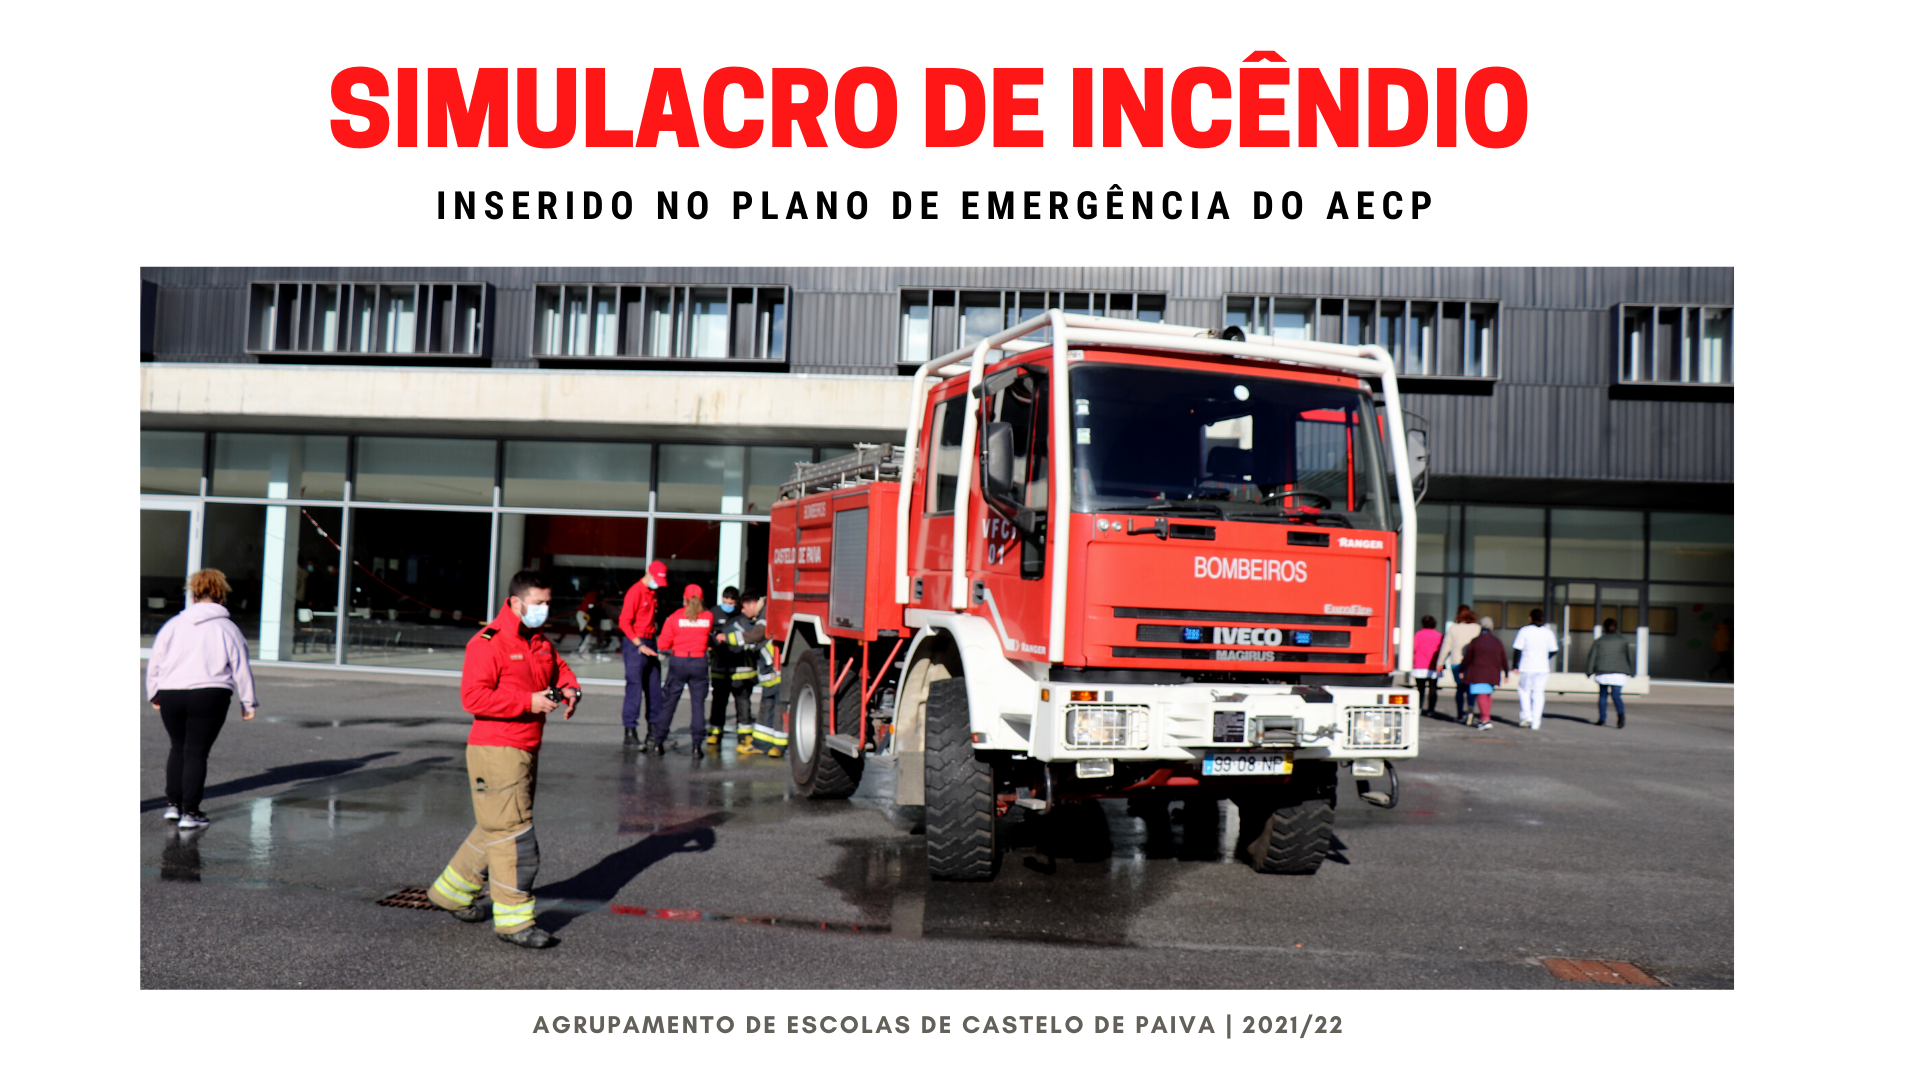 SIMULACRO DE INCÊNDIO NO AECP